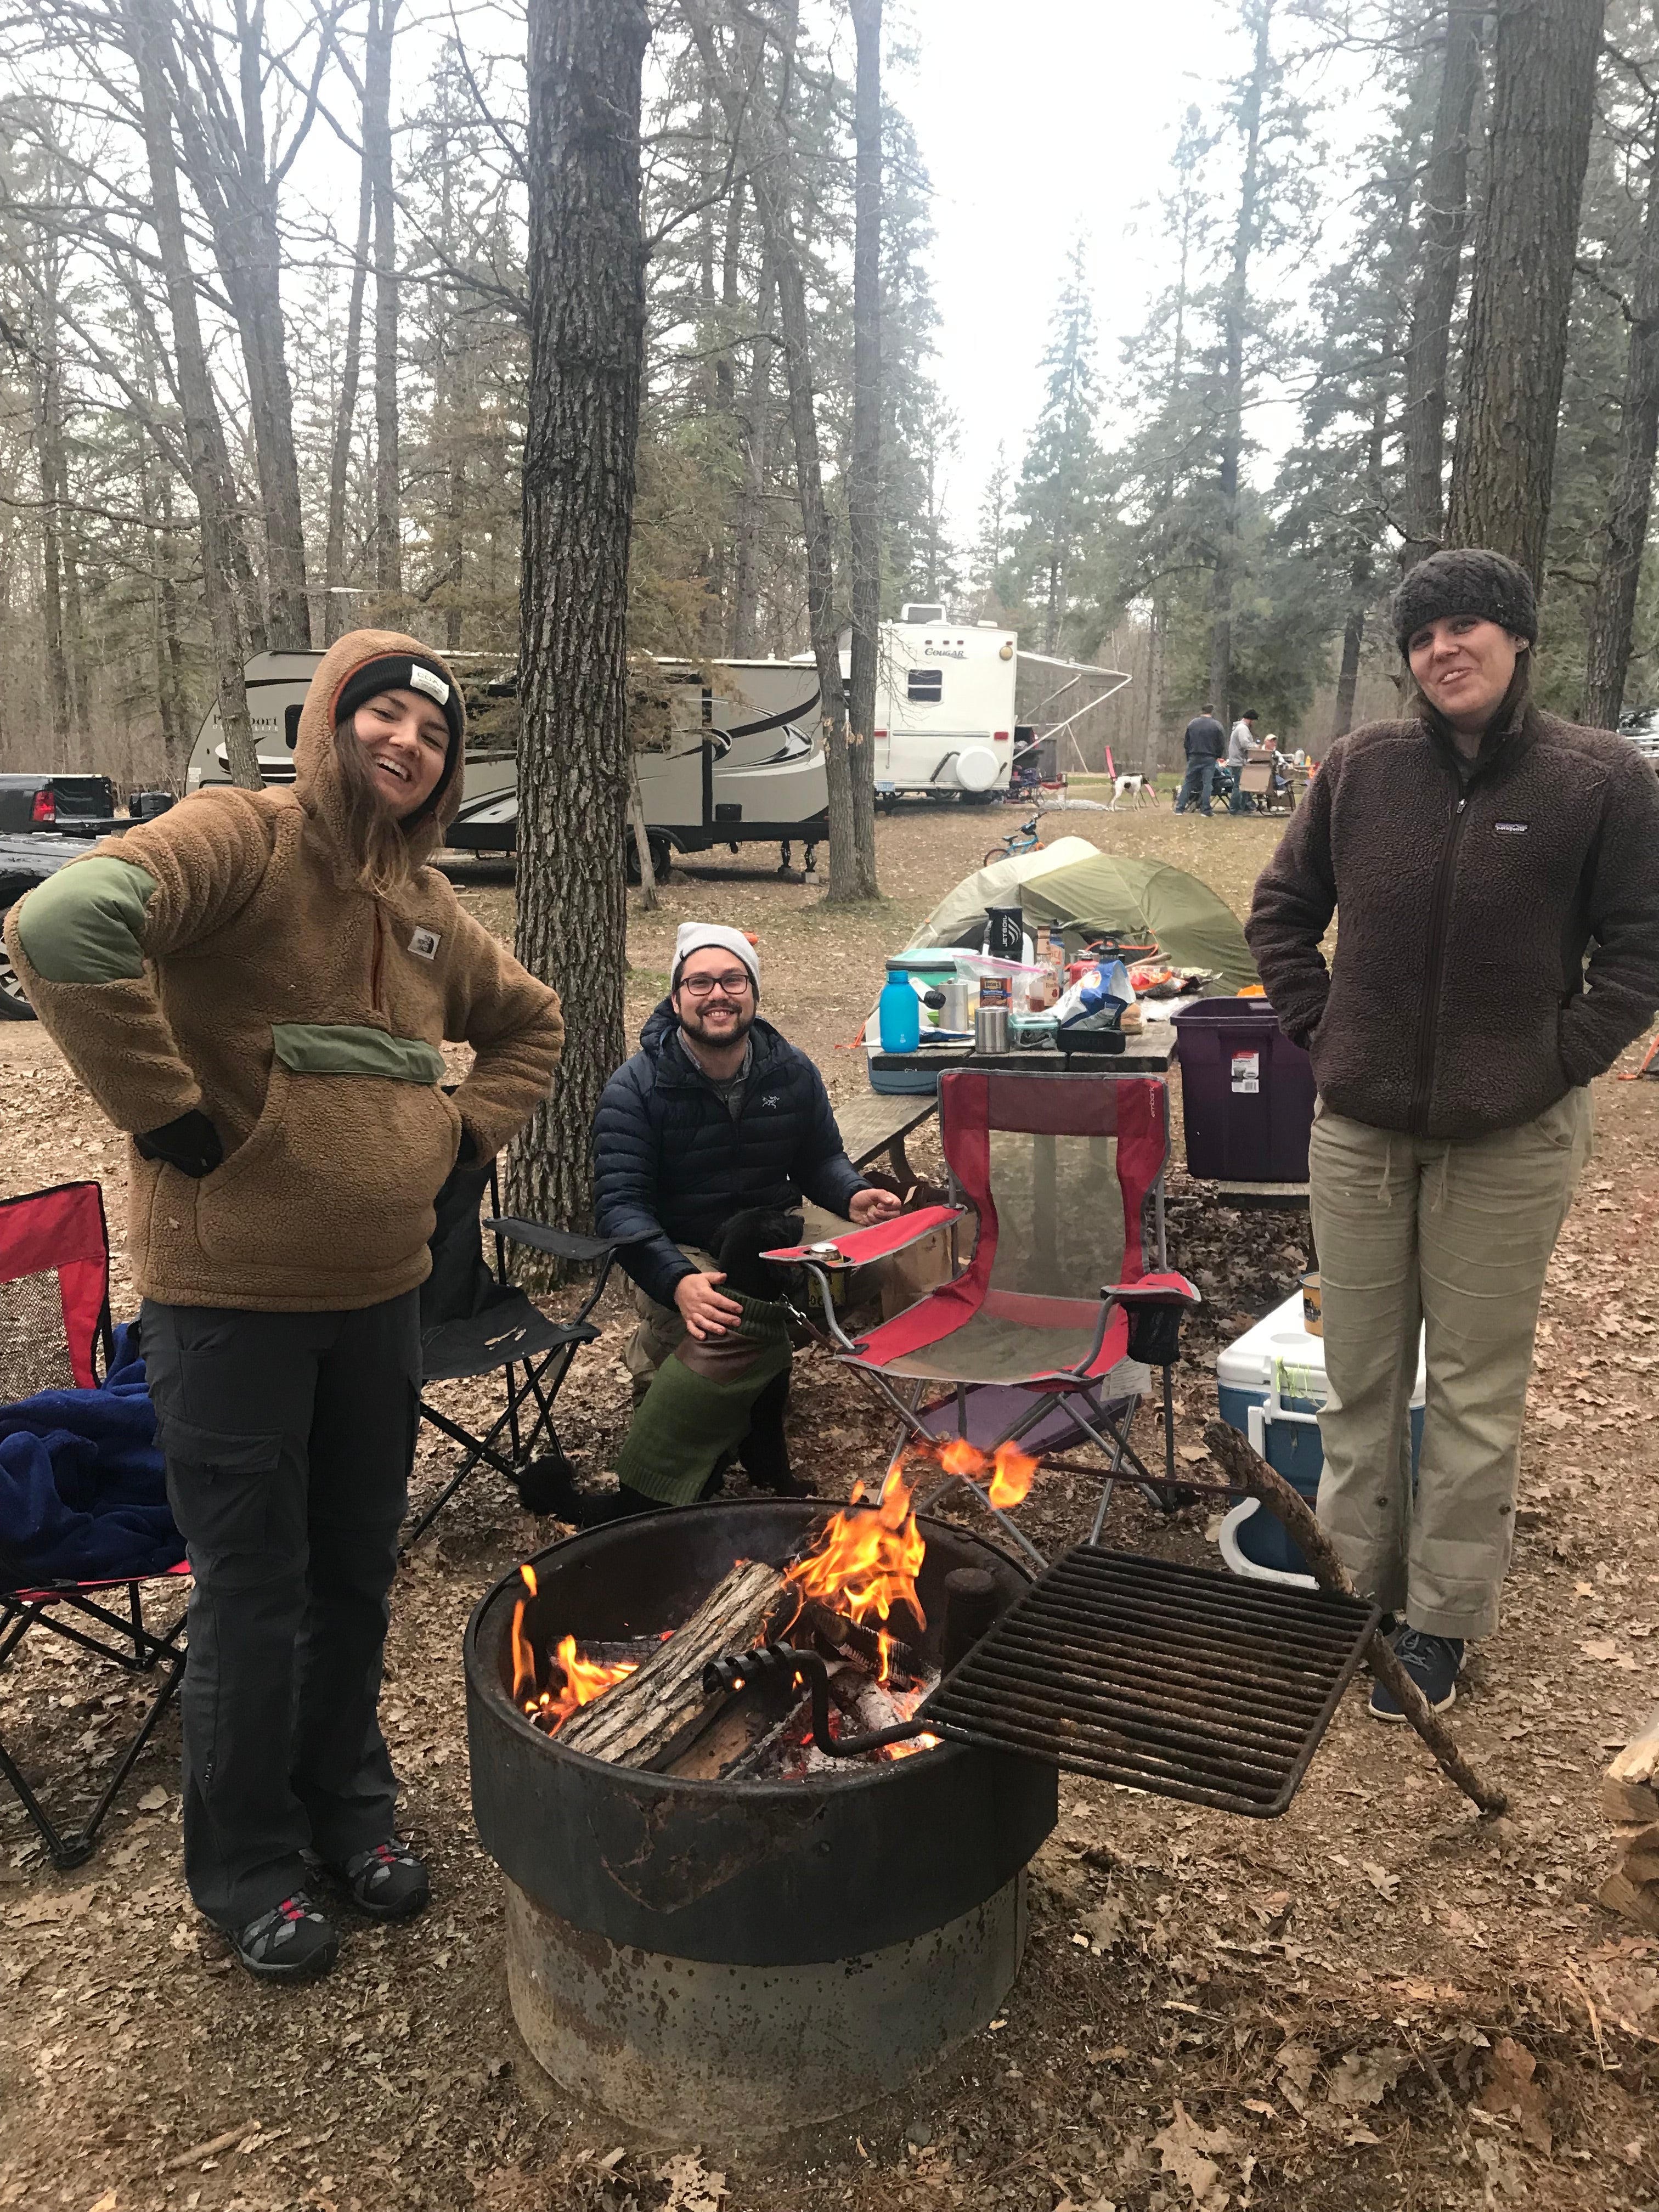 Cold, but fun. Early season camping [May 2019]